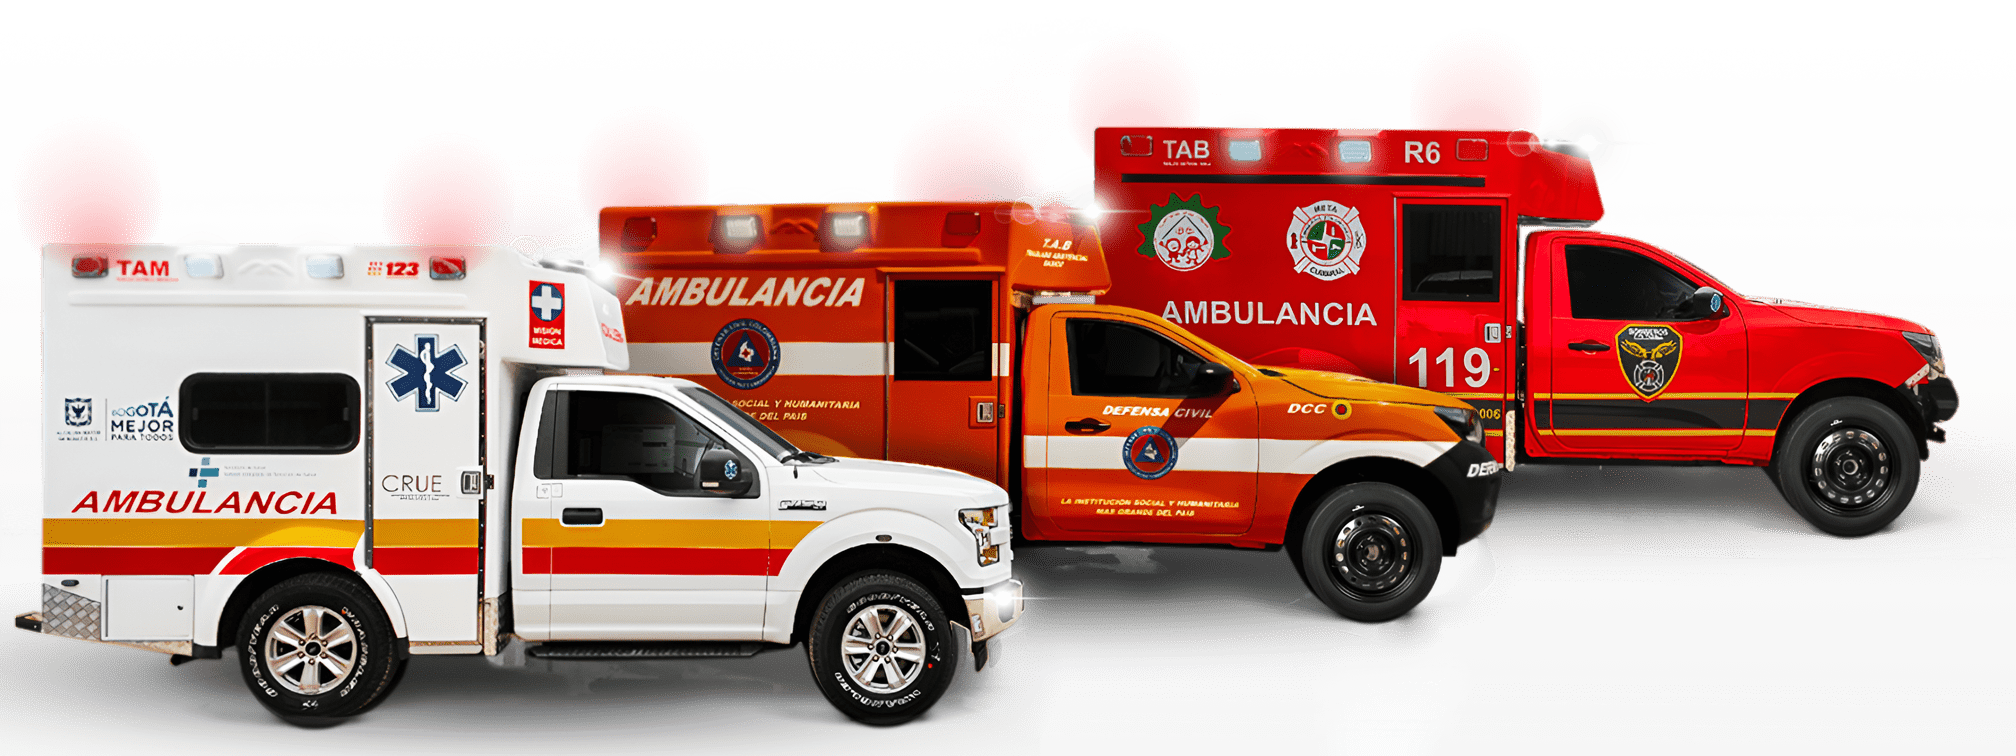 Ambulancias y Vehiculos de rescate, Unidades Neonatal y Psicriaticas